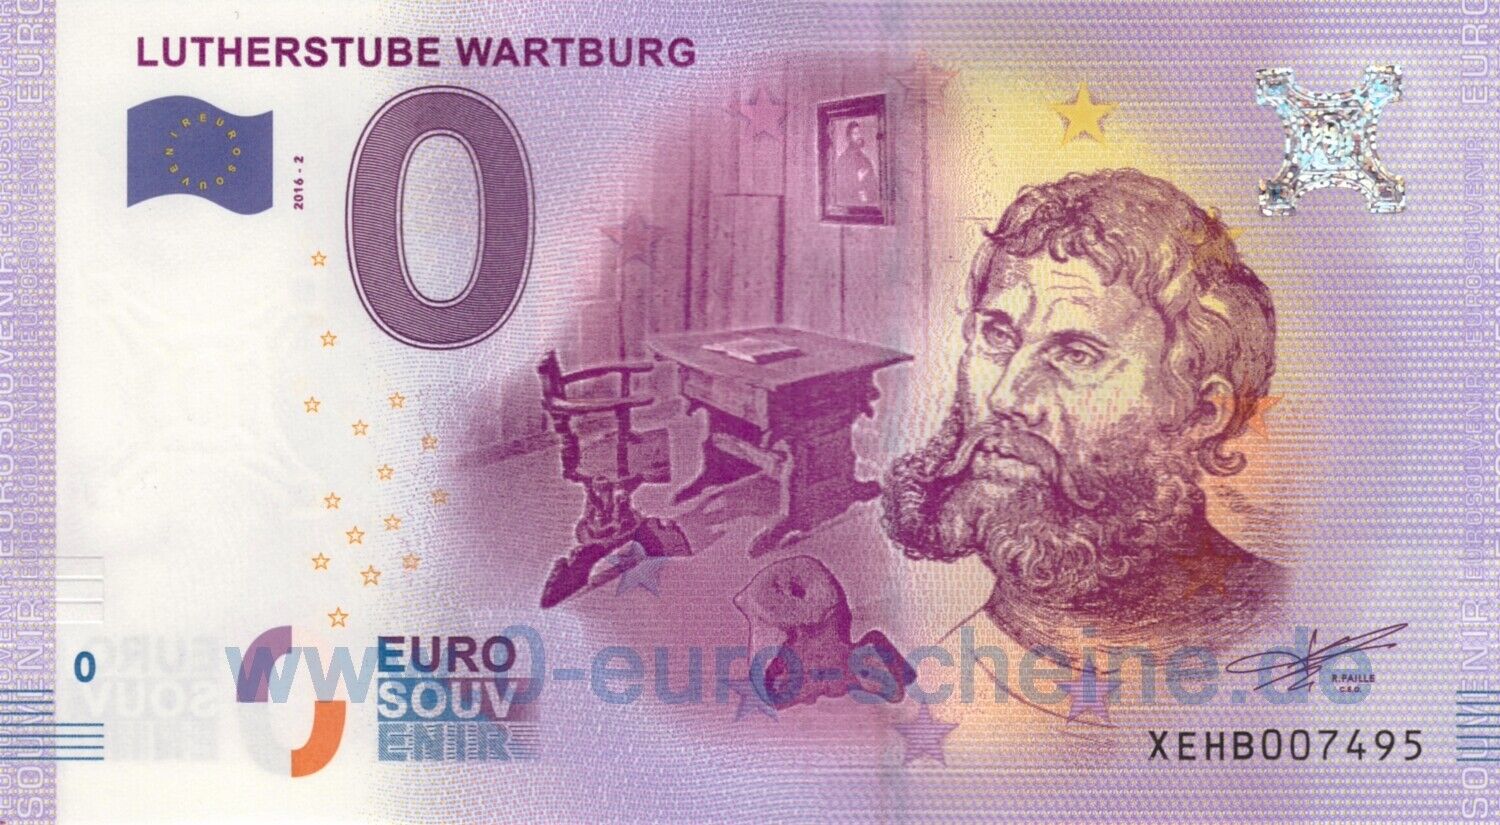 🅾️ Lutherstube Wartburg ◾ XEHB 2016-2 ◾ 0-euro-bill Zero O€ Souvenir O UNC